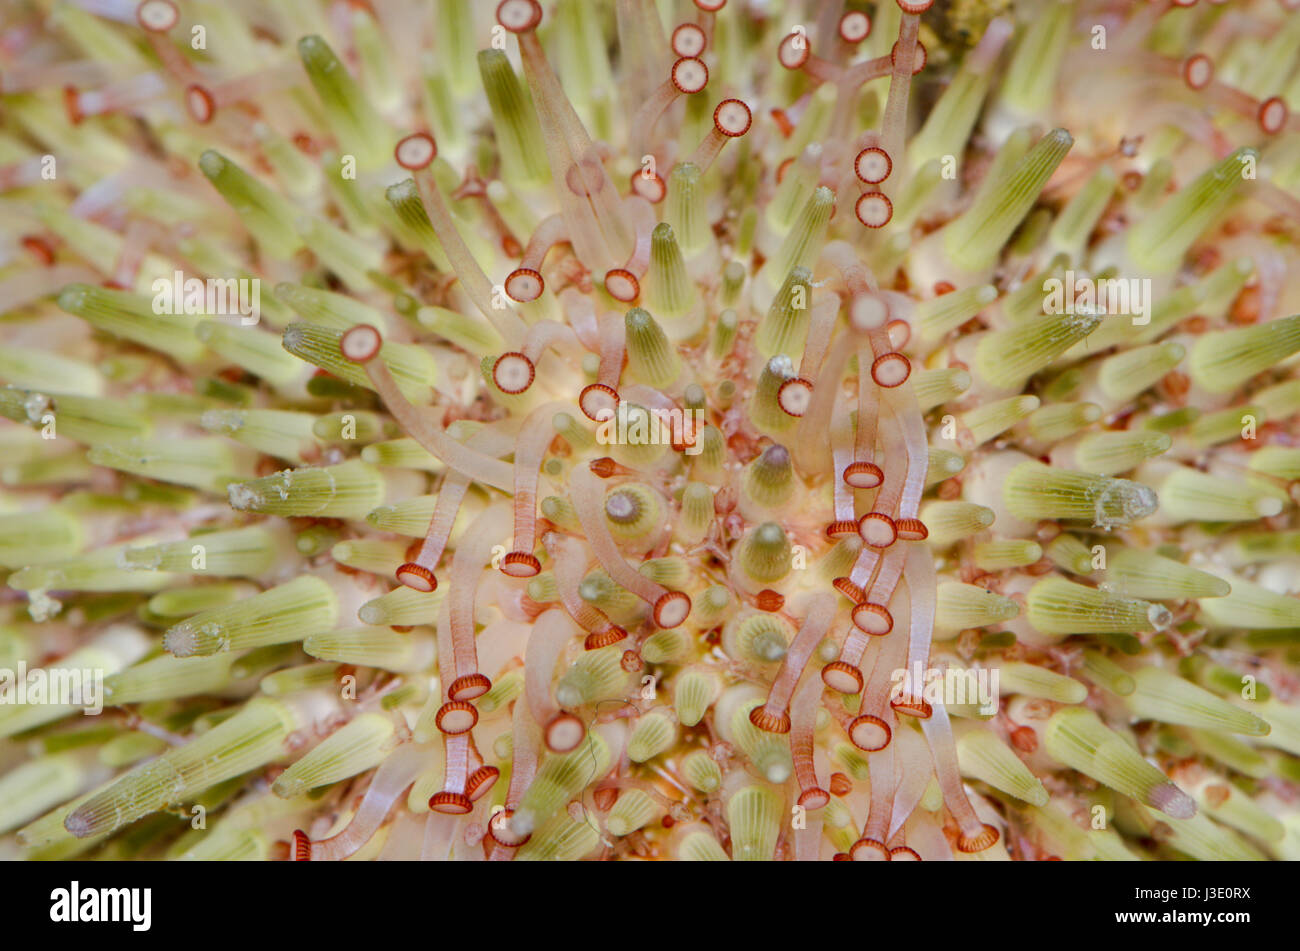 Fuß grüner Seeigel (Psammechinus miliaris) Stockfoto